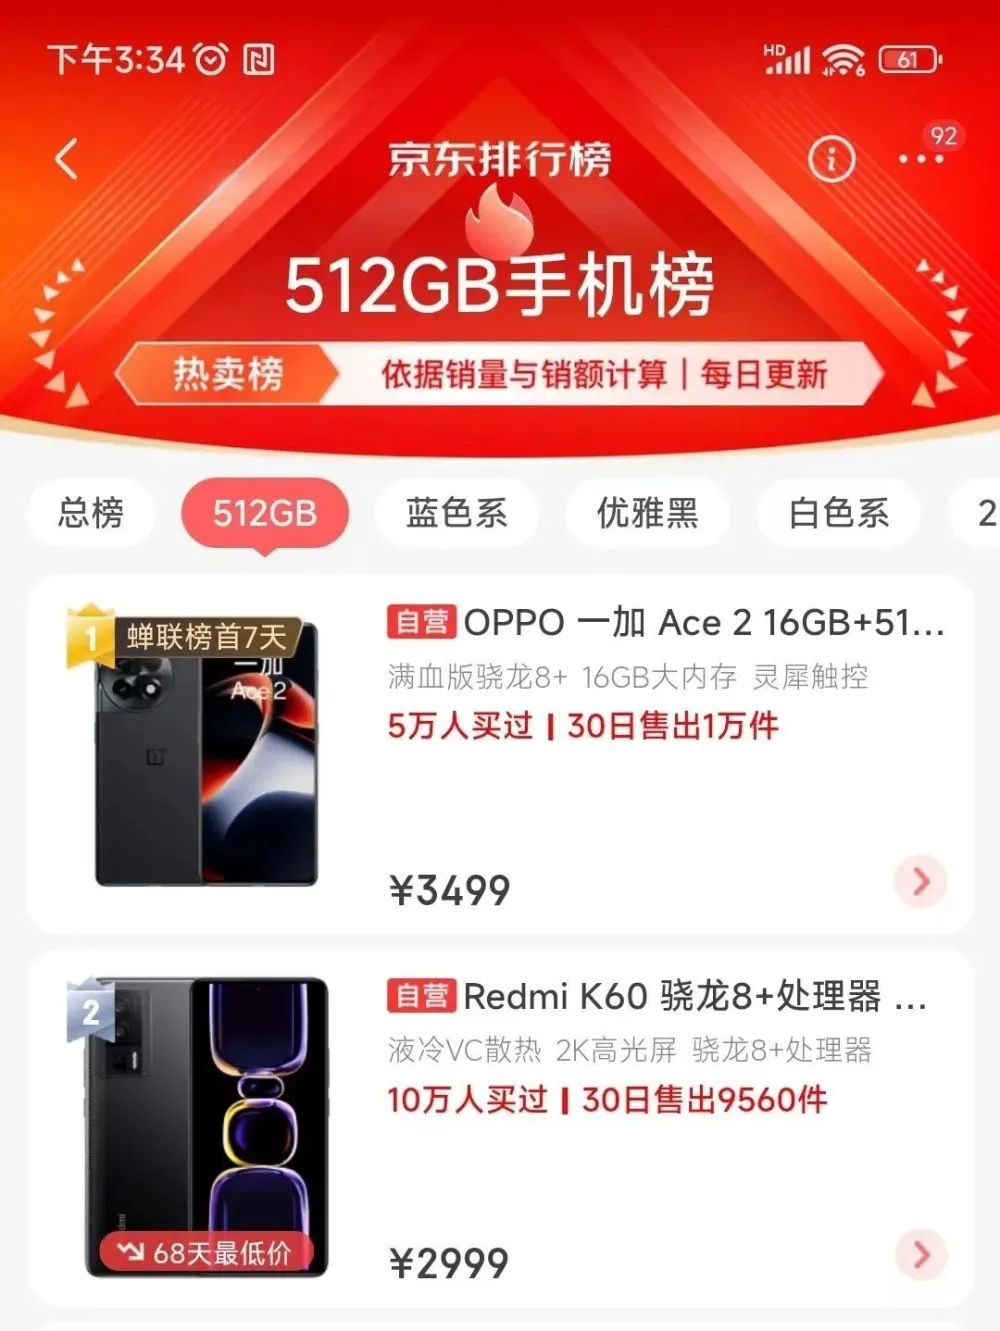 macbook pro降价 2016_红米note4 红米pro 评测_红米pro降价